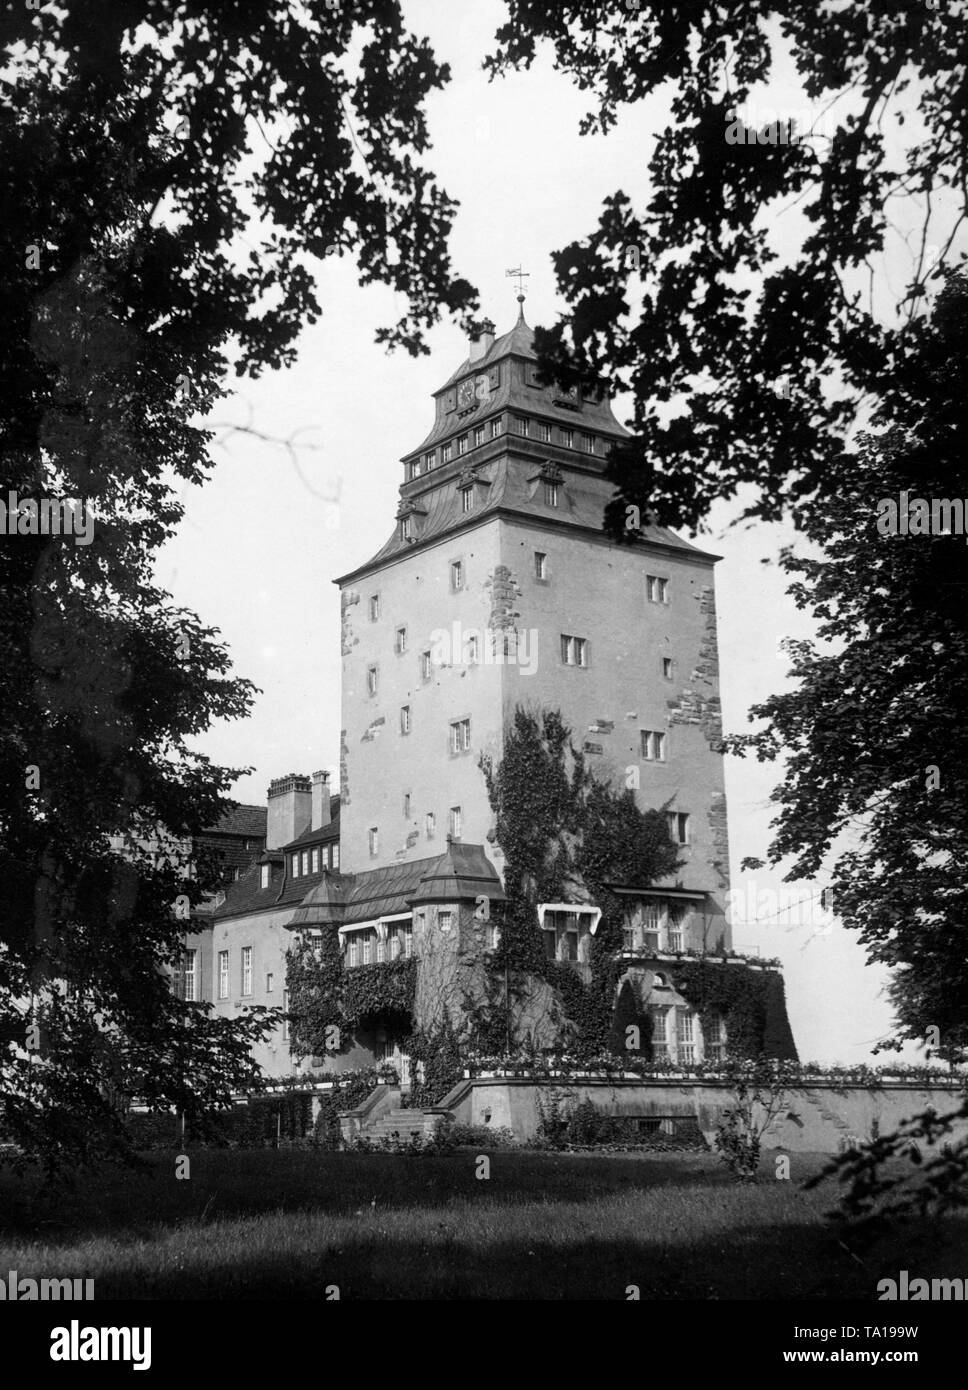 La tour du château Renaissance Leuthen brut, construit en 1913 dans le style classiciste, près de Luebben dans le Spreewald, la Prusse. Banque D'Images